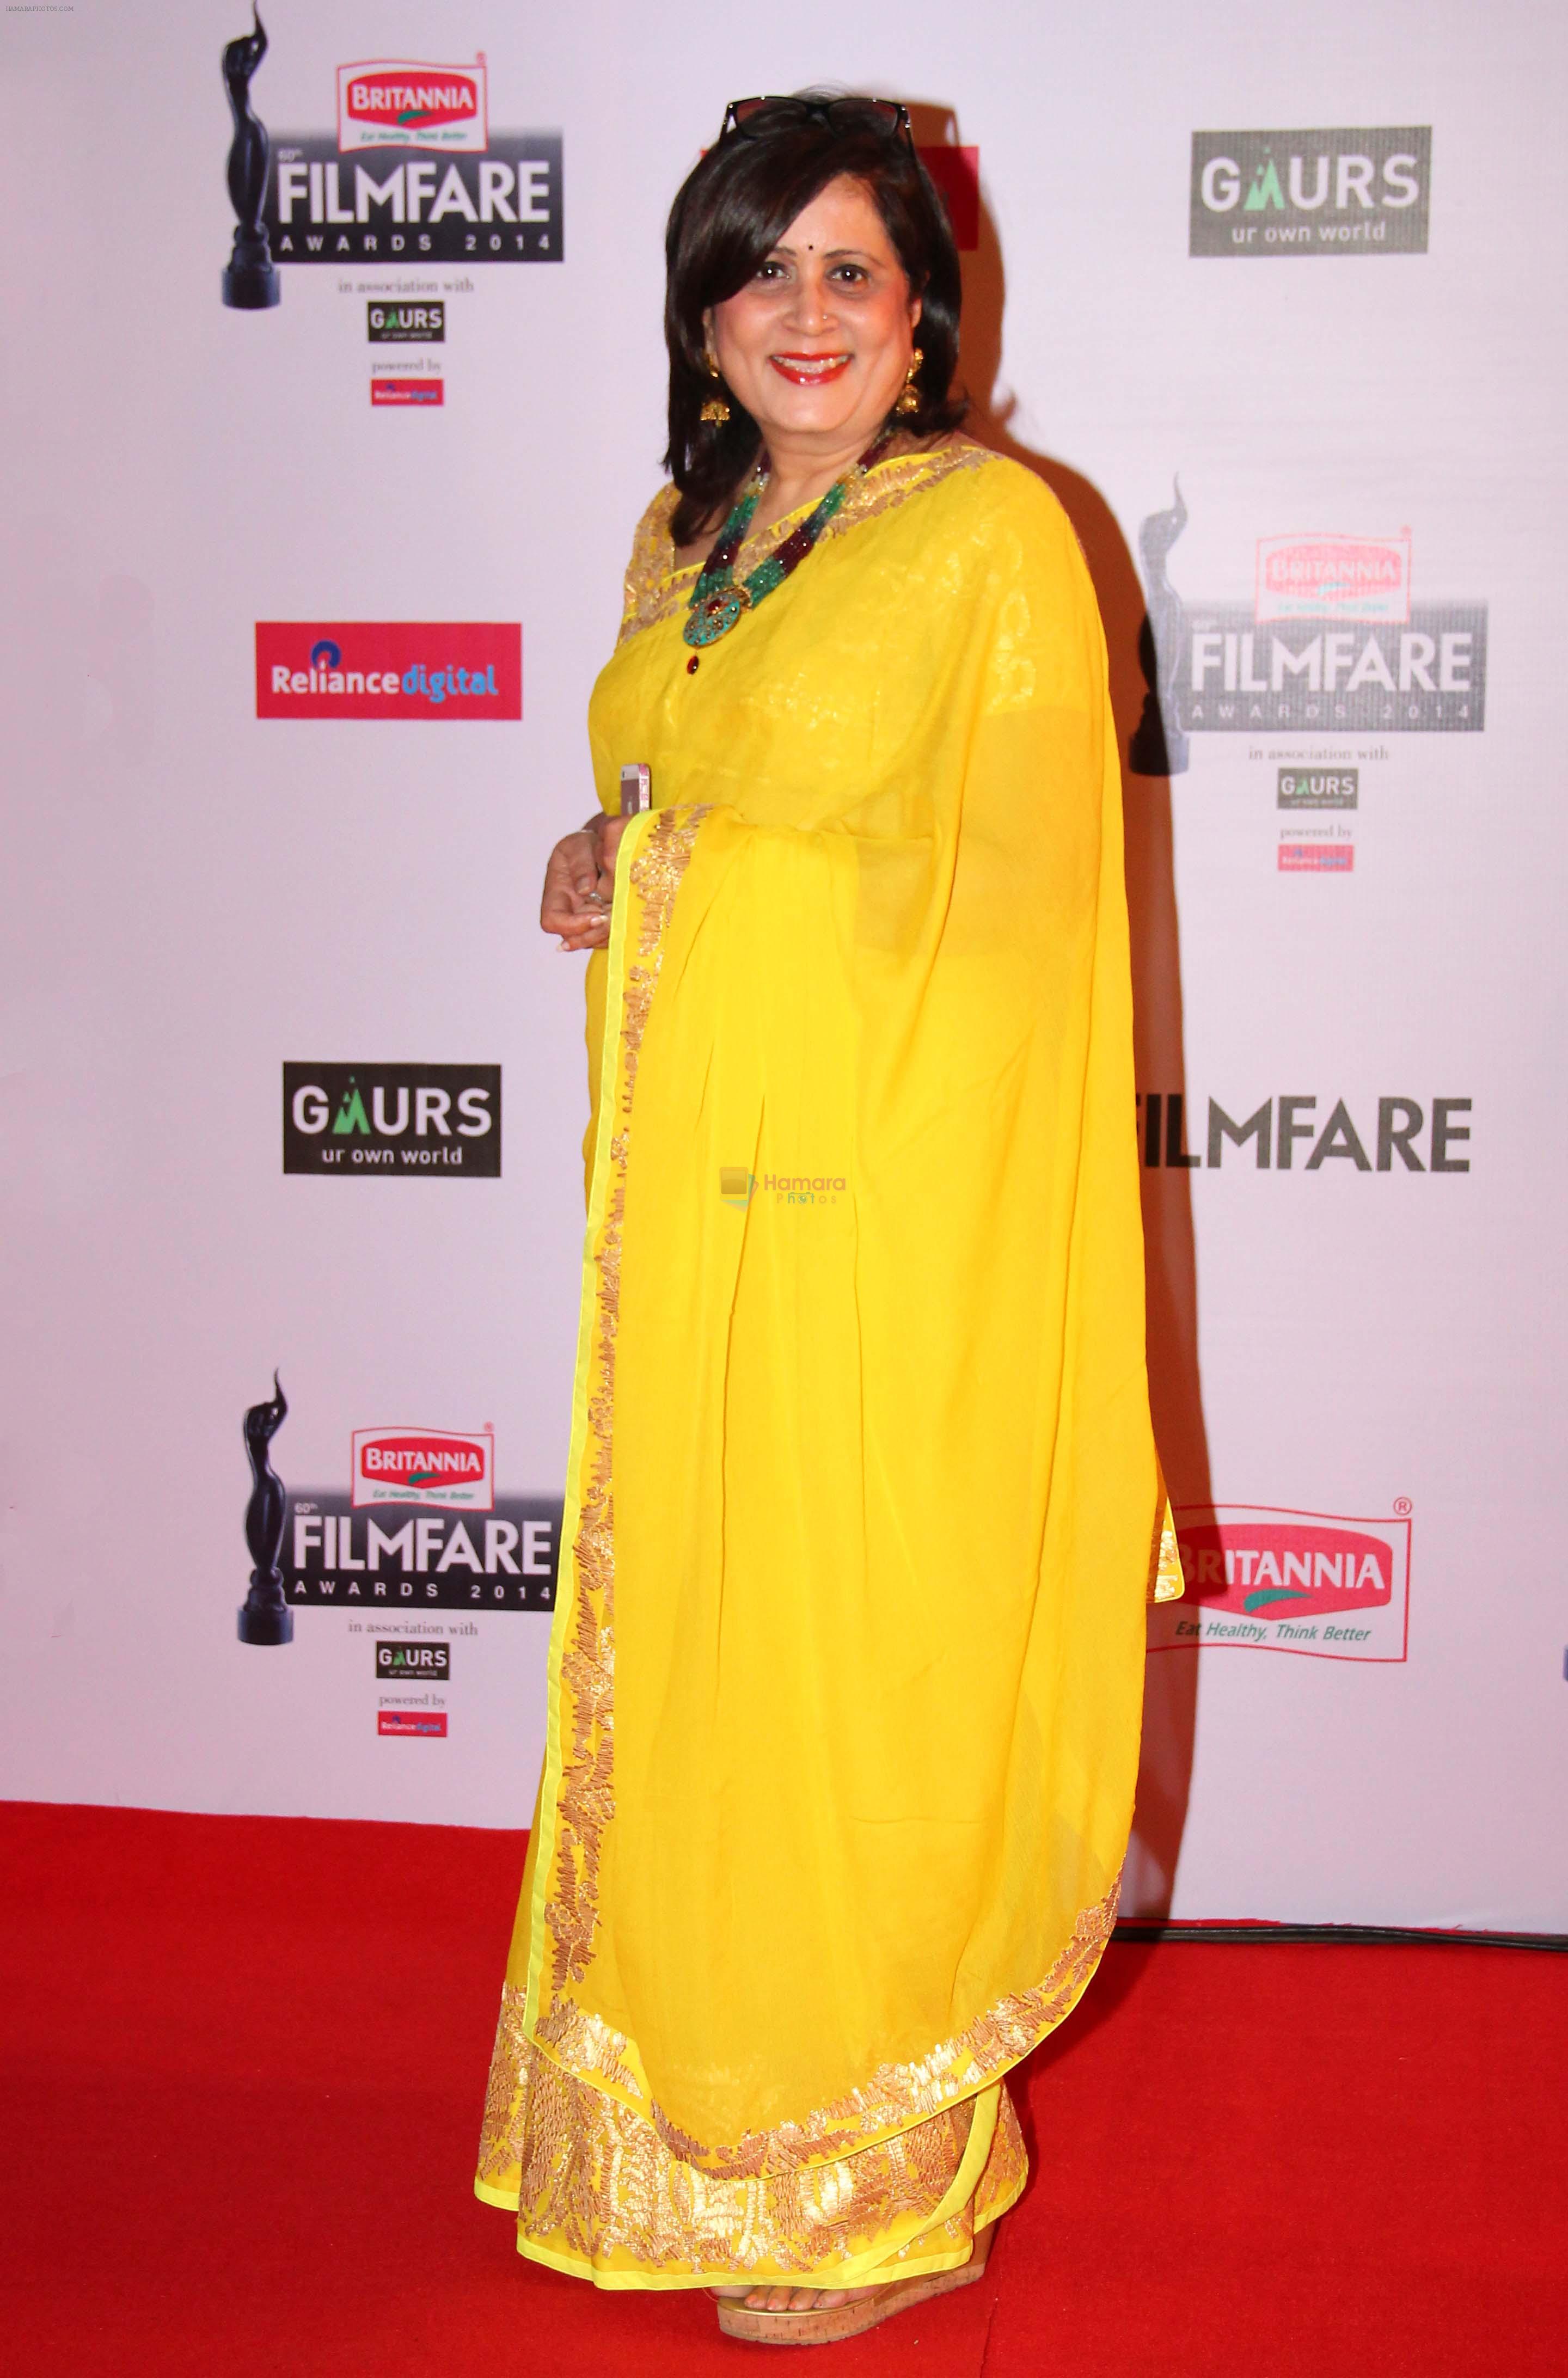 Mrinalini Deshmukh graces the red carpet at the 60th Britannia Filmfare Awards